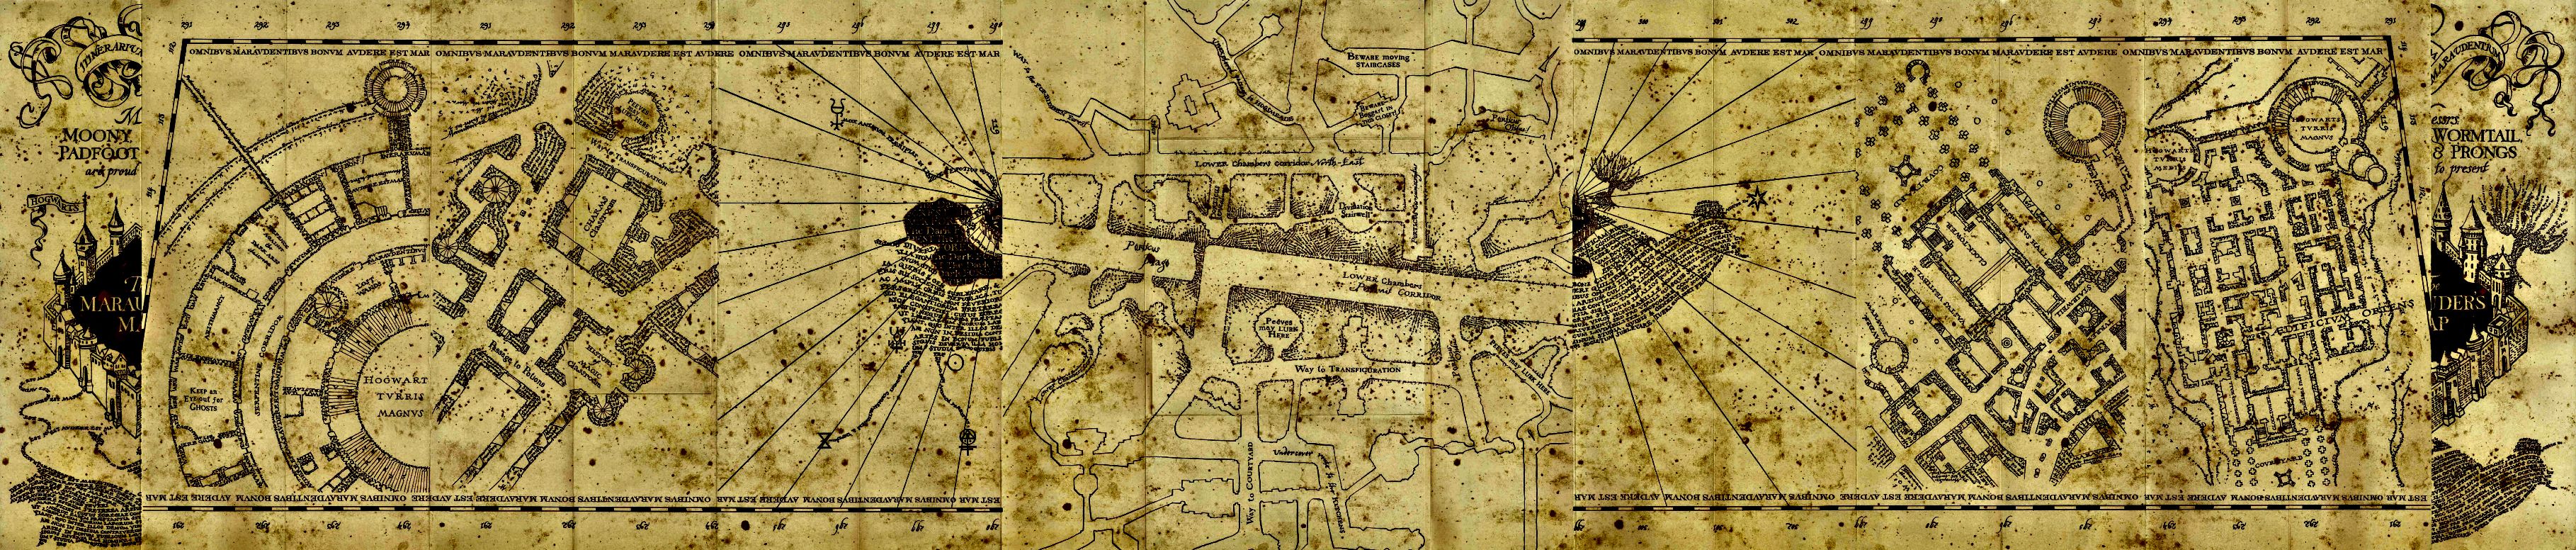 Marauder's Map Wallpaper